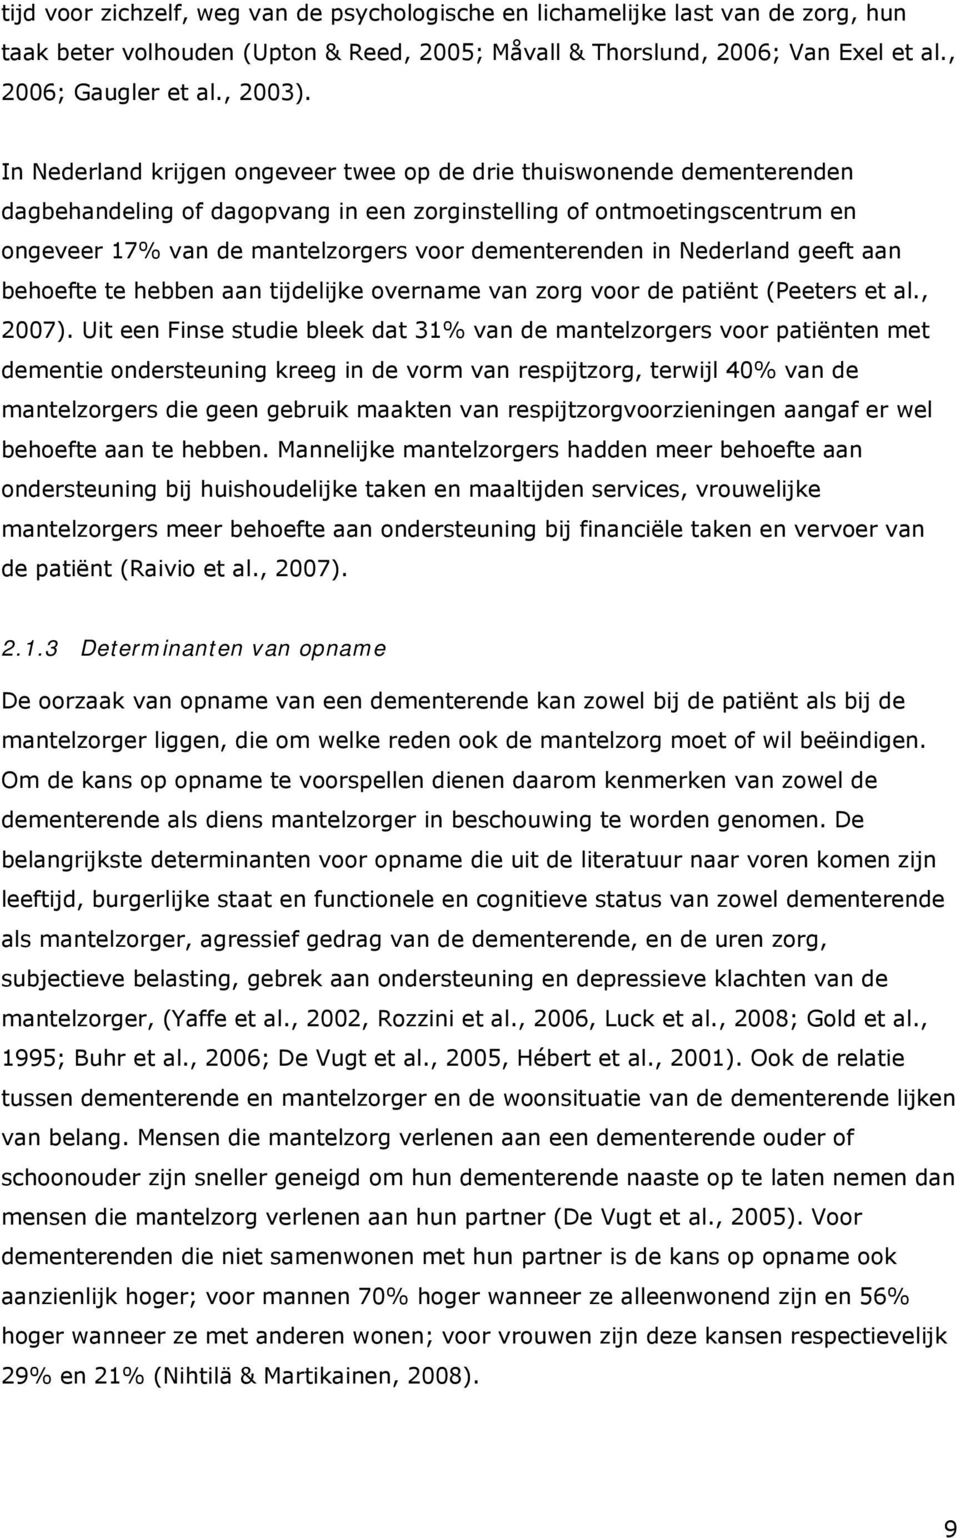 dementerenden in Nederland geeft aan behoefte te hebben aan tijdelijke overname van zorg voor de patiënt (Peeters et al., 2007).